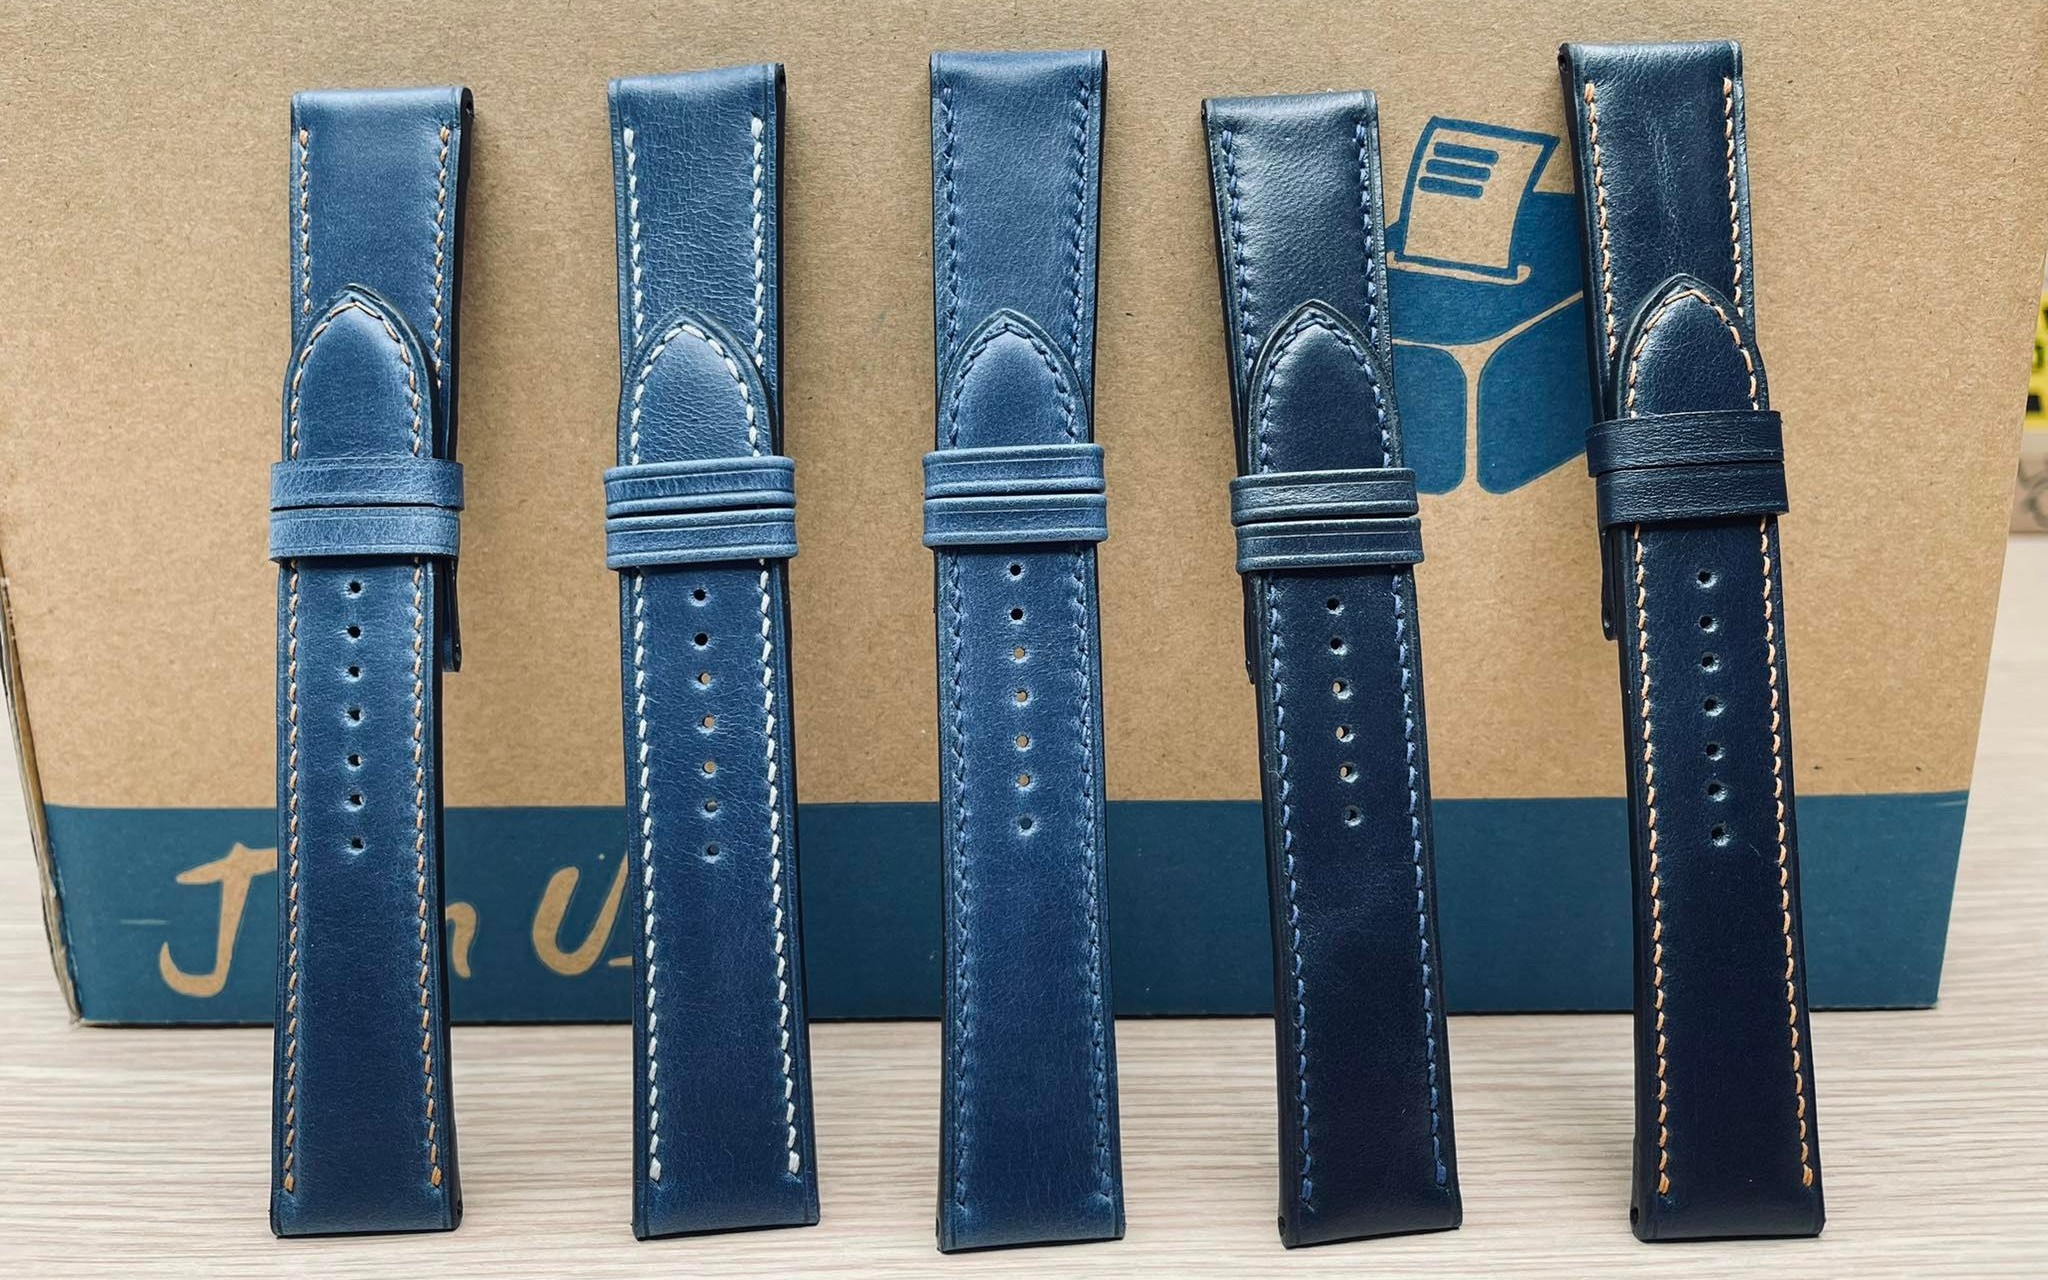 Tổng hợp các mẫu dây da bò handmade màu xanh blue đang có sẵn tại Xship.vn